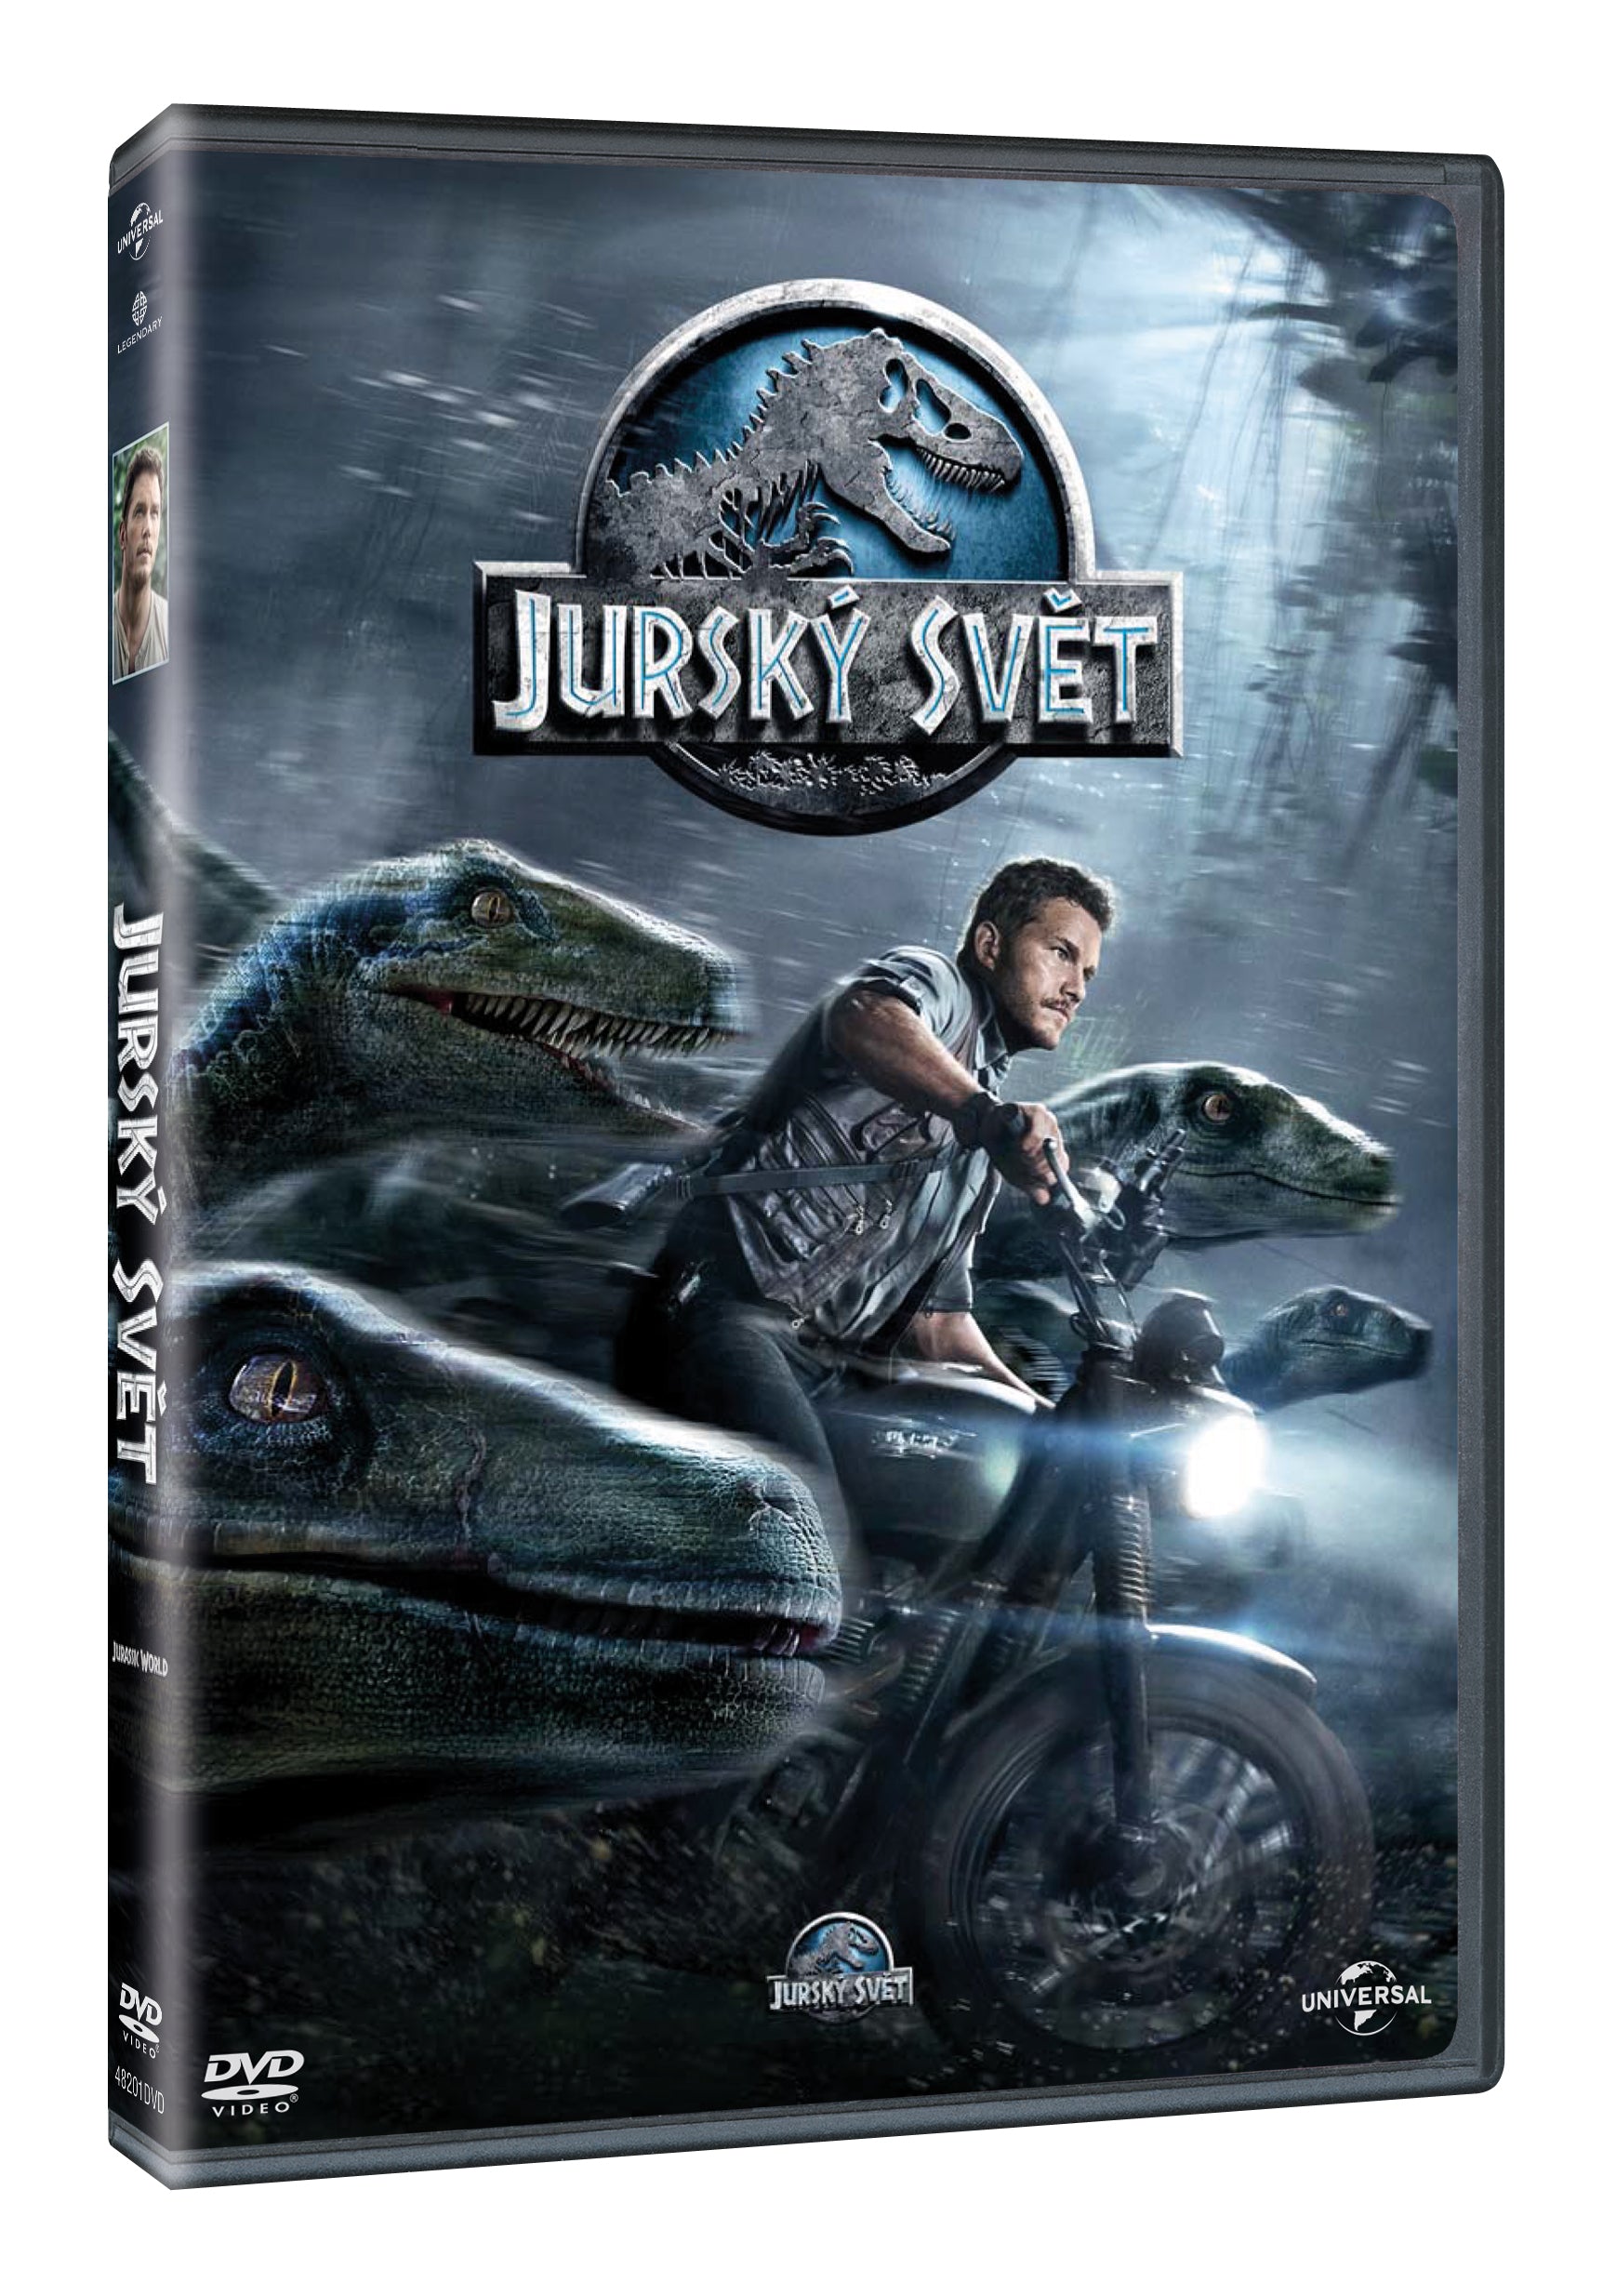 Jursky svet DVD / Jurassic World